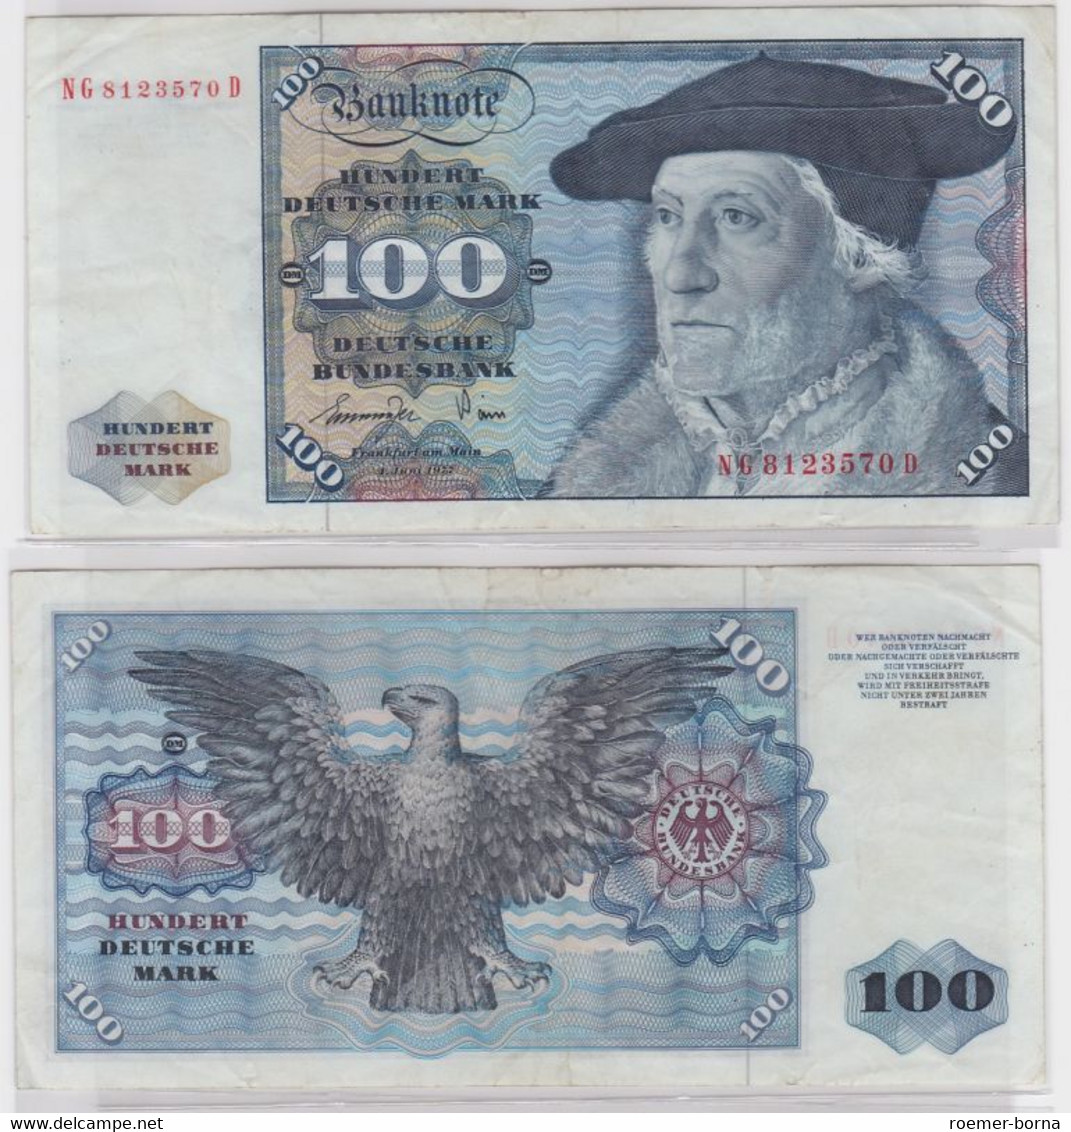 T145439 Banknote 100 DM Deutsche Mark Ro 278a Schein 1.Juni 1977 KN NG 8123570 D - 100 DM